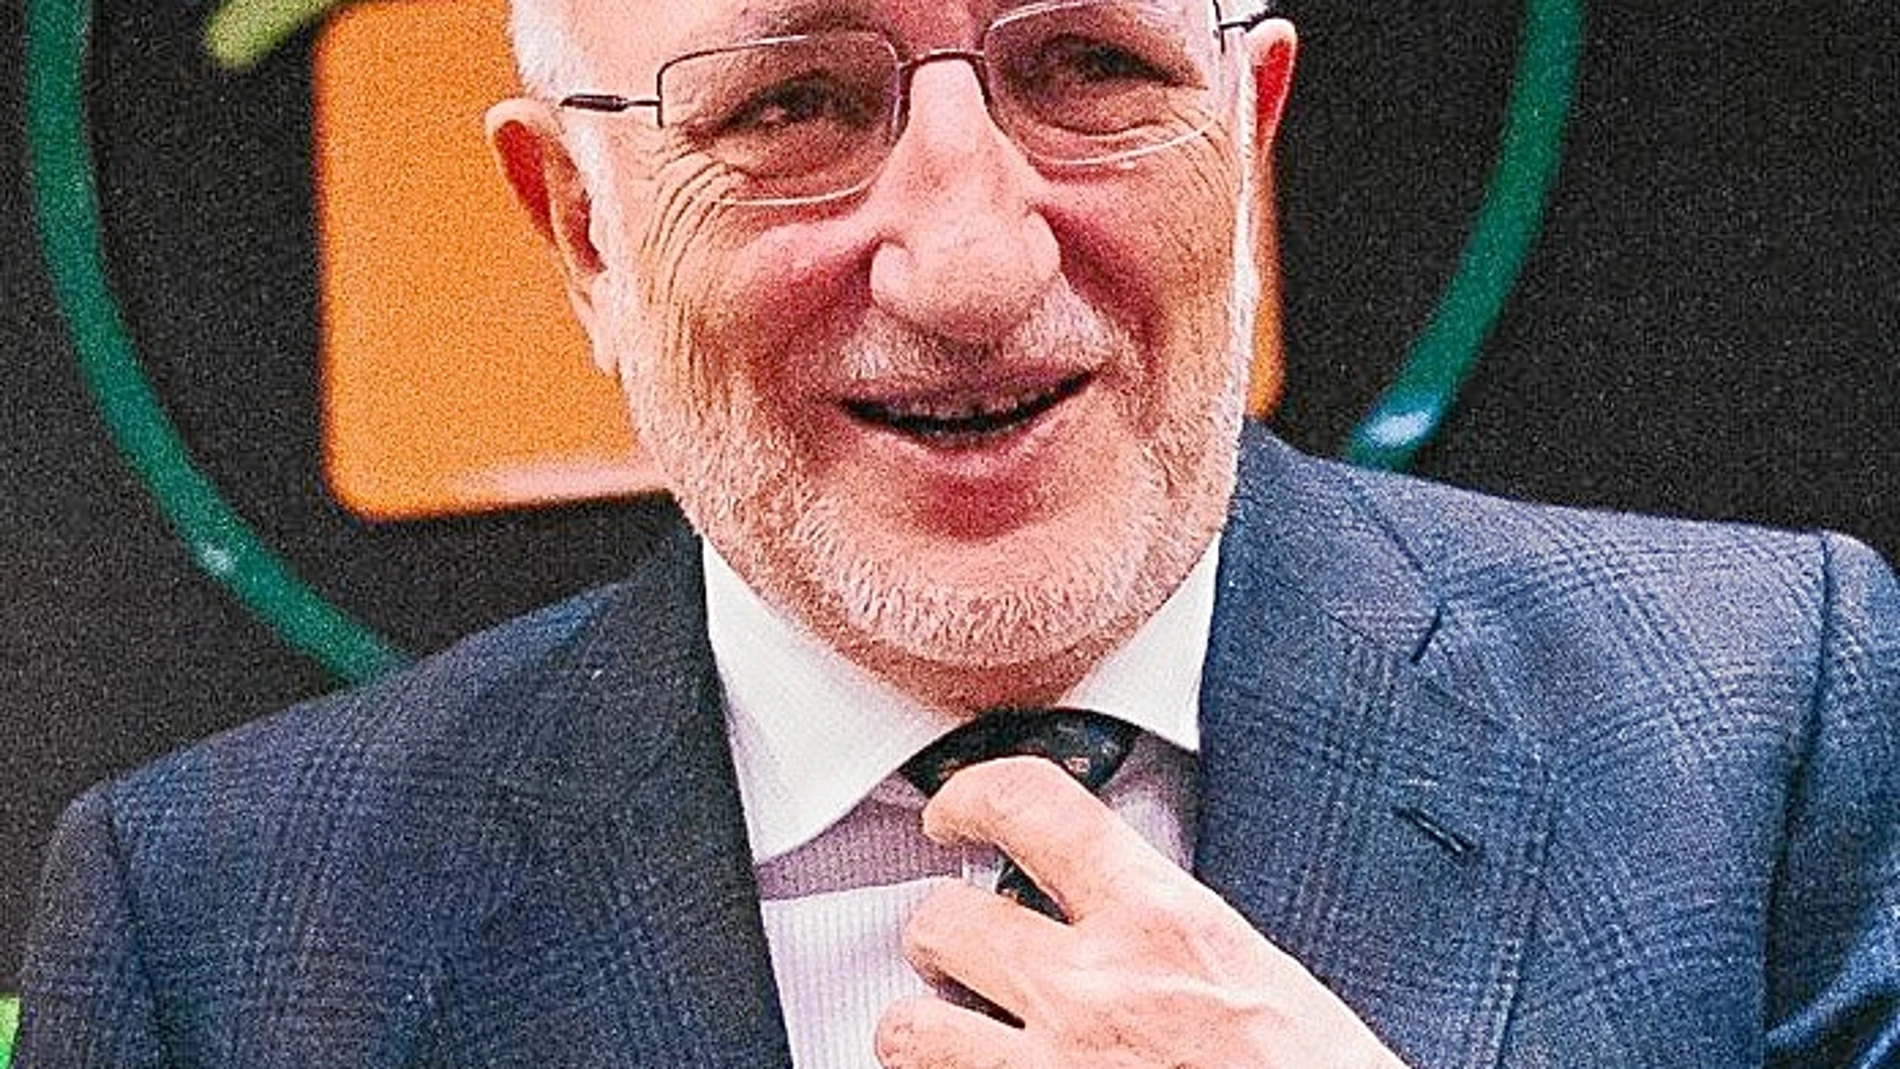 Juan Roig, presidente de Mercadona